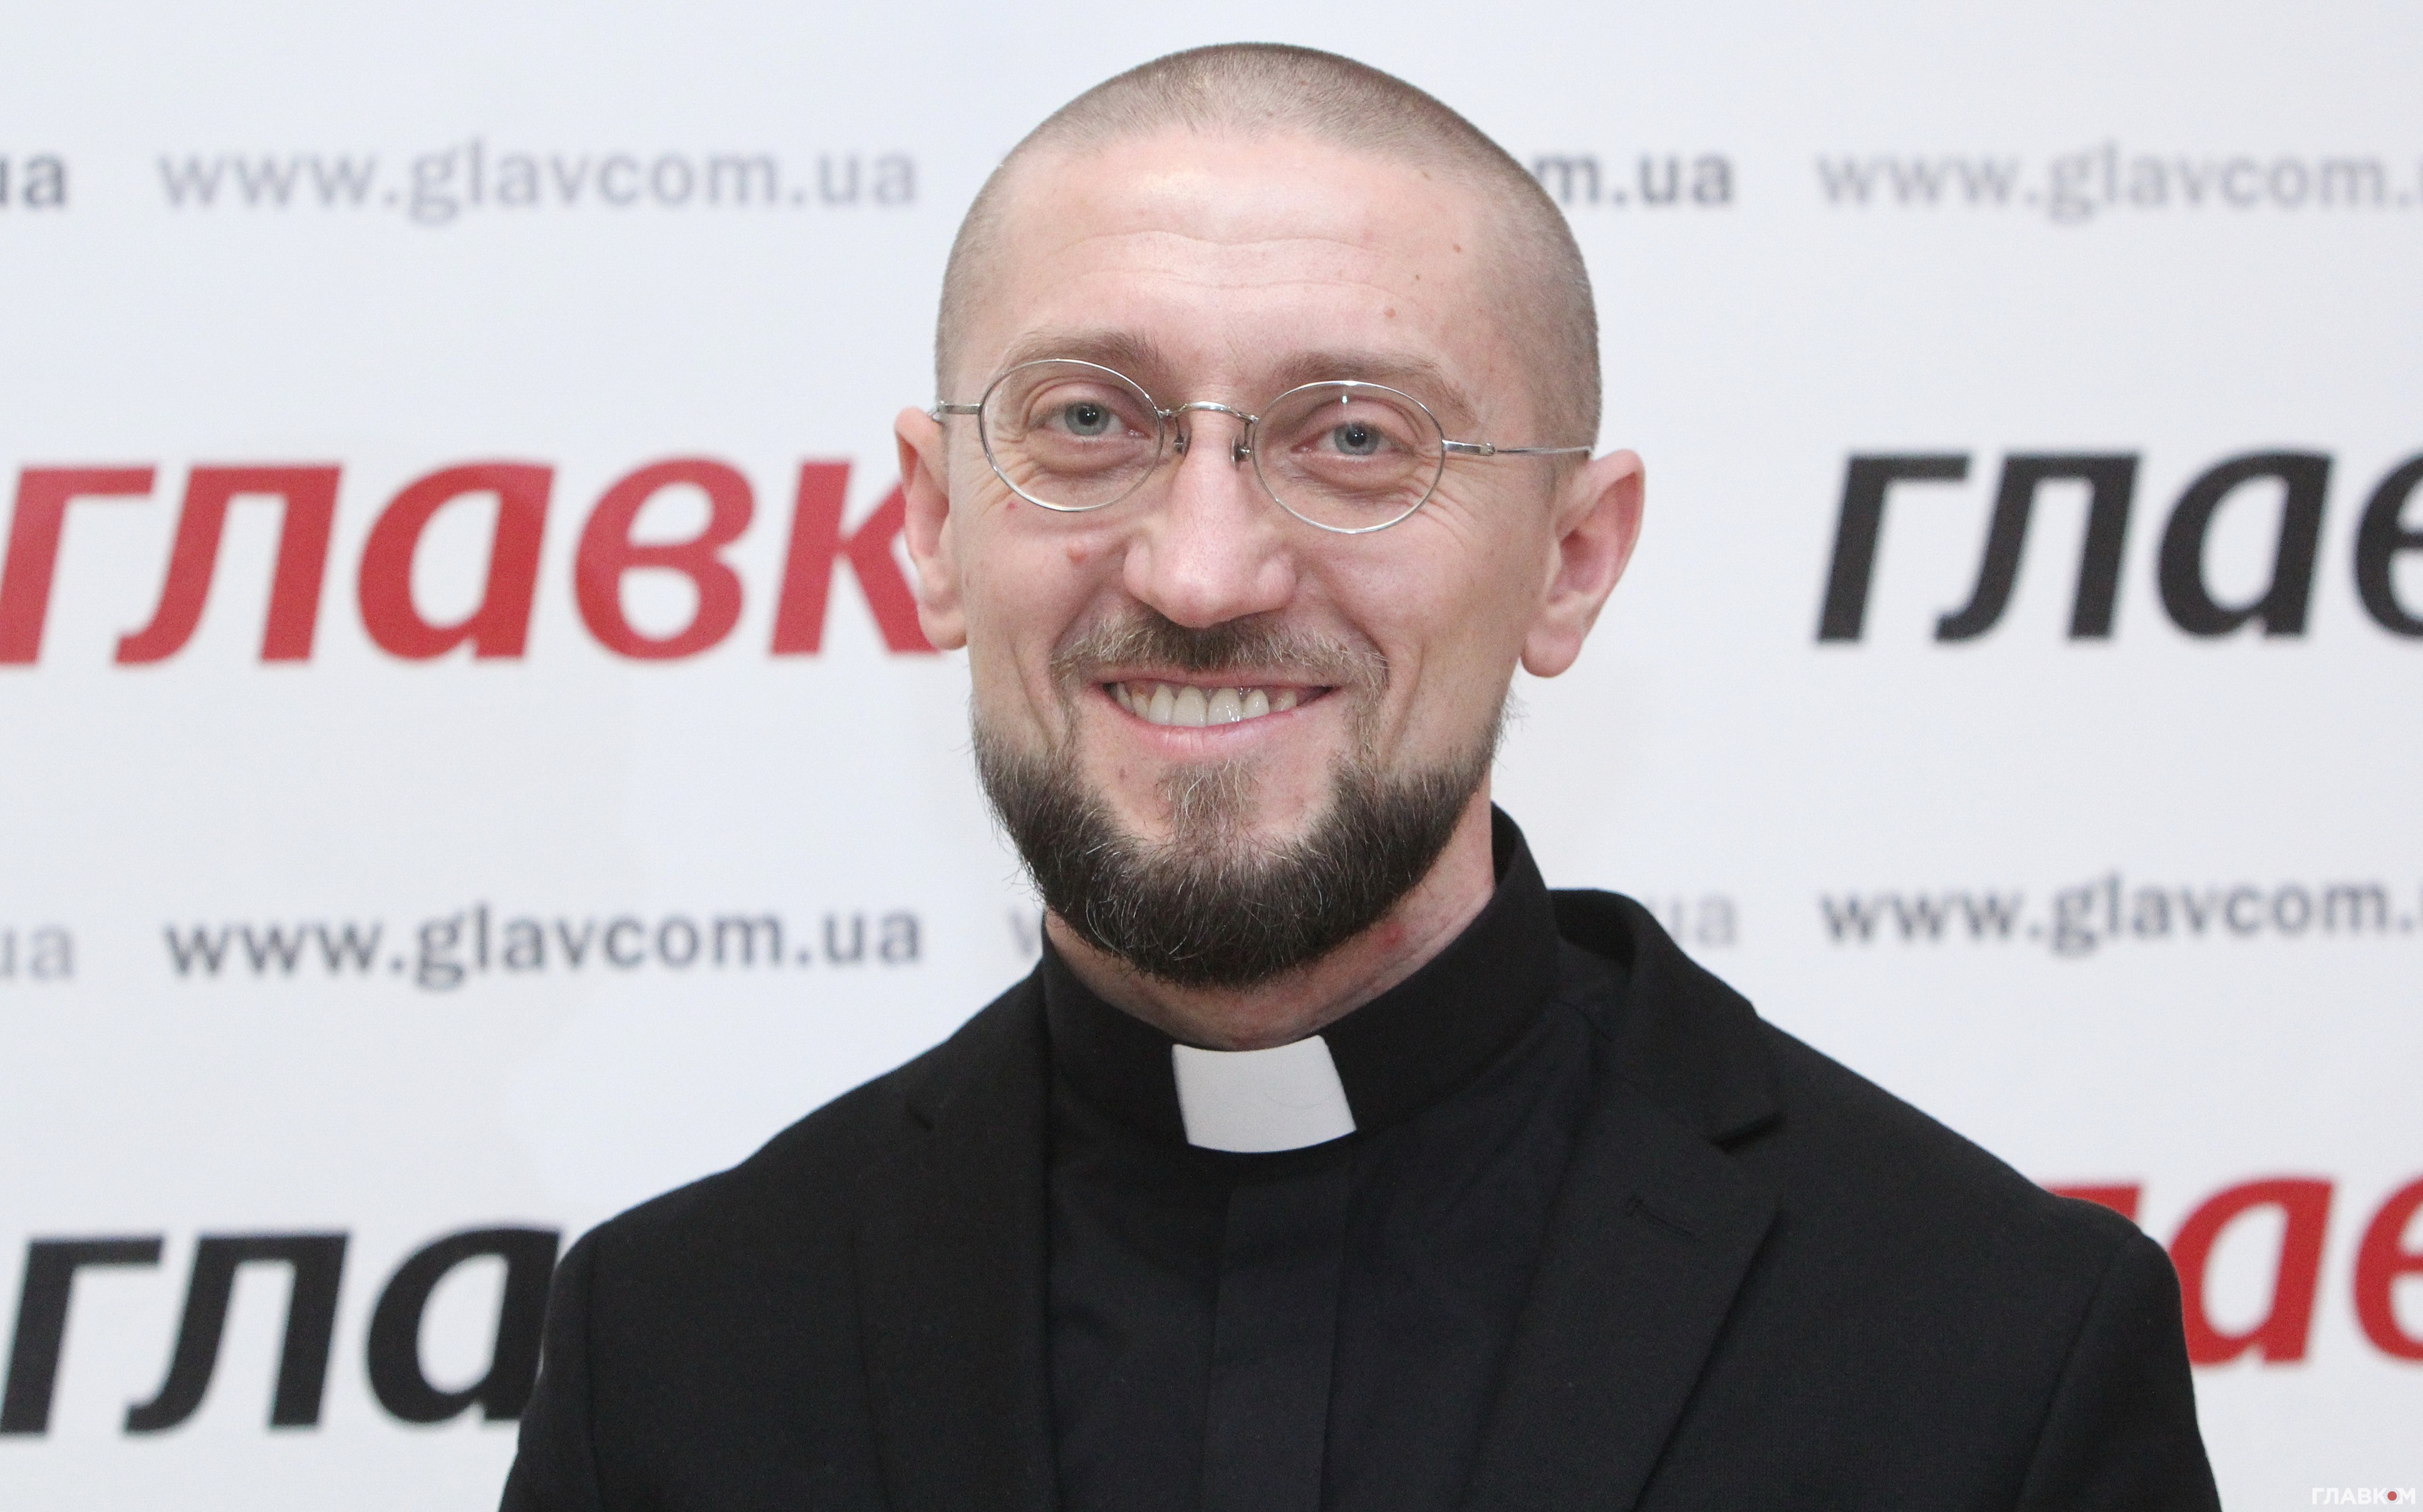 Андрій Зелінський, капелан УГКЦ